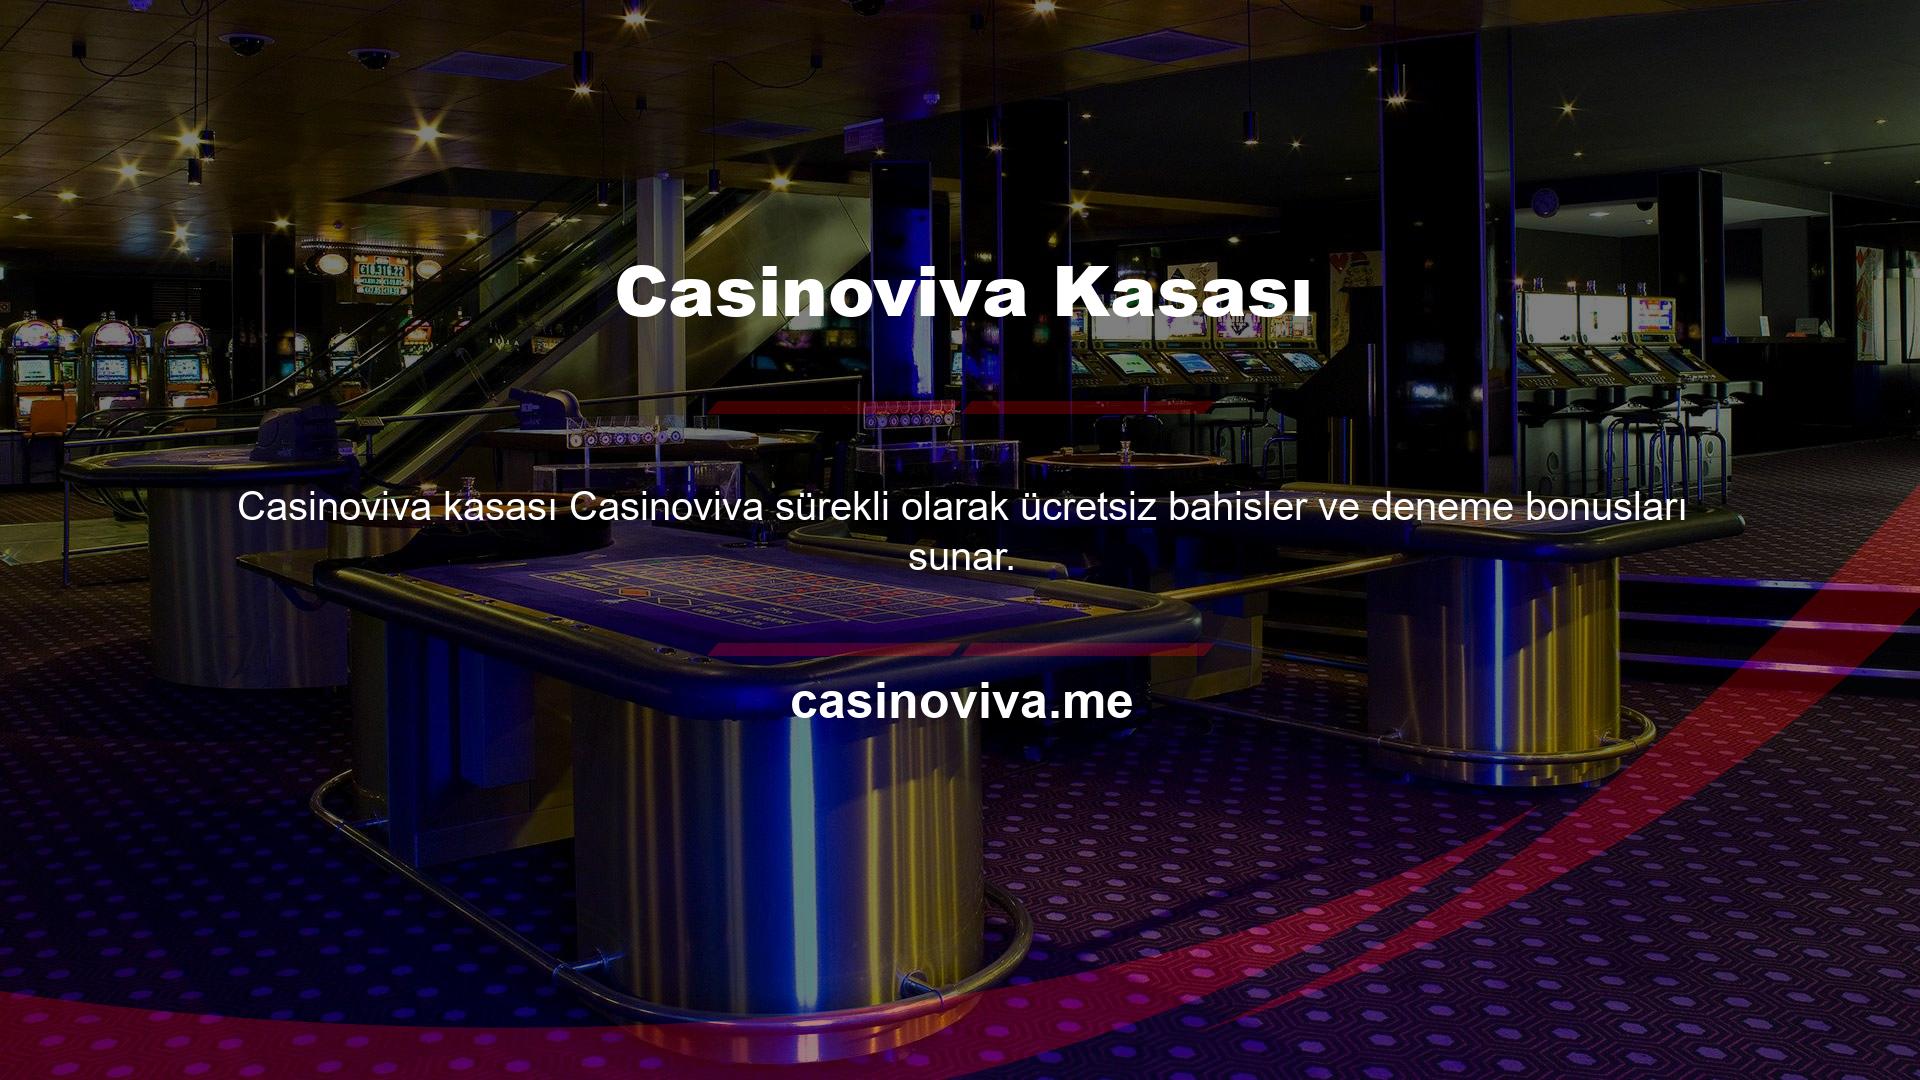 Casinoviva ayrıca birçok ek yatırım ve zarar bonusu hizmeti sunmaktadır